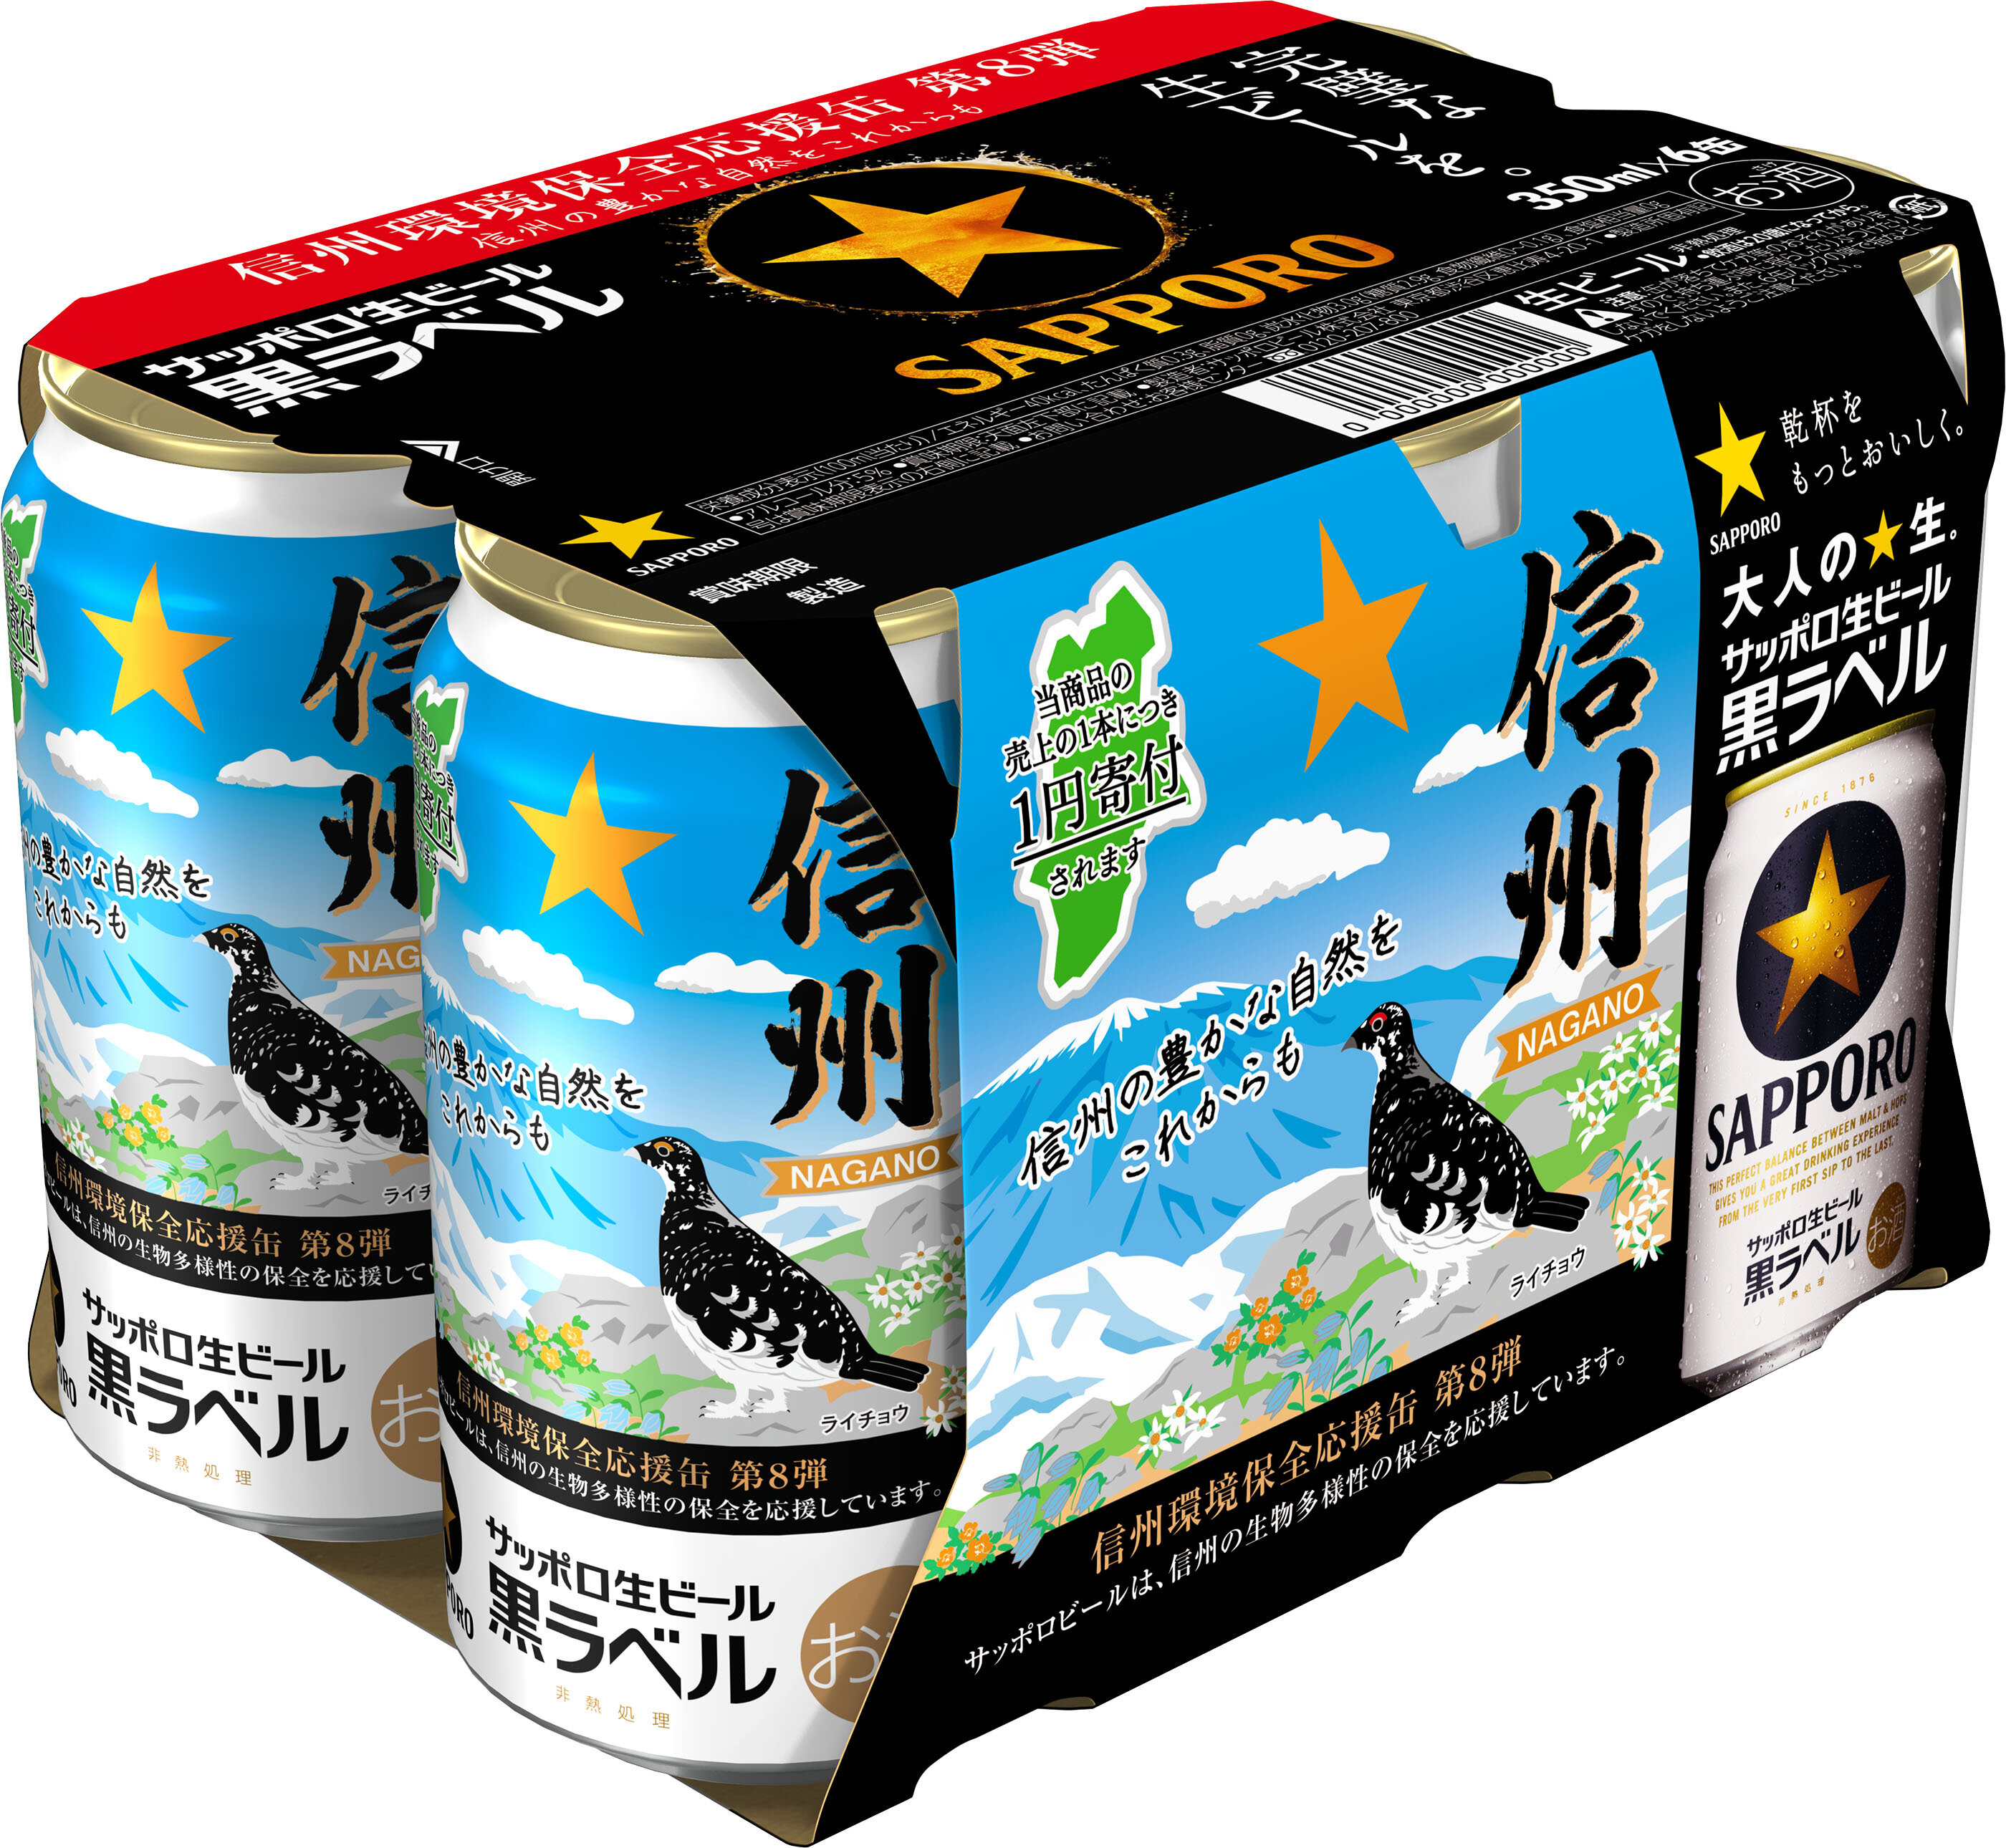 サッポロ生ビール黒ラベル「信州環境保全応援缶」第8弾 限定発売